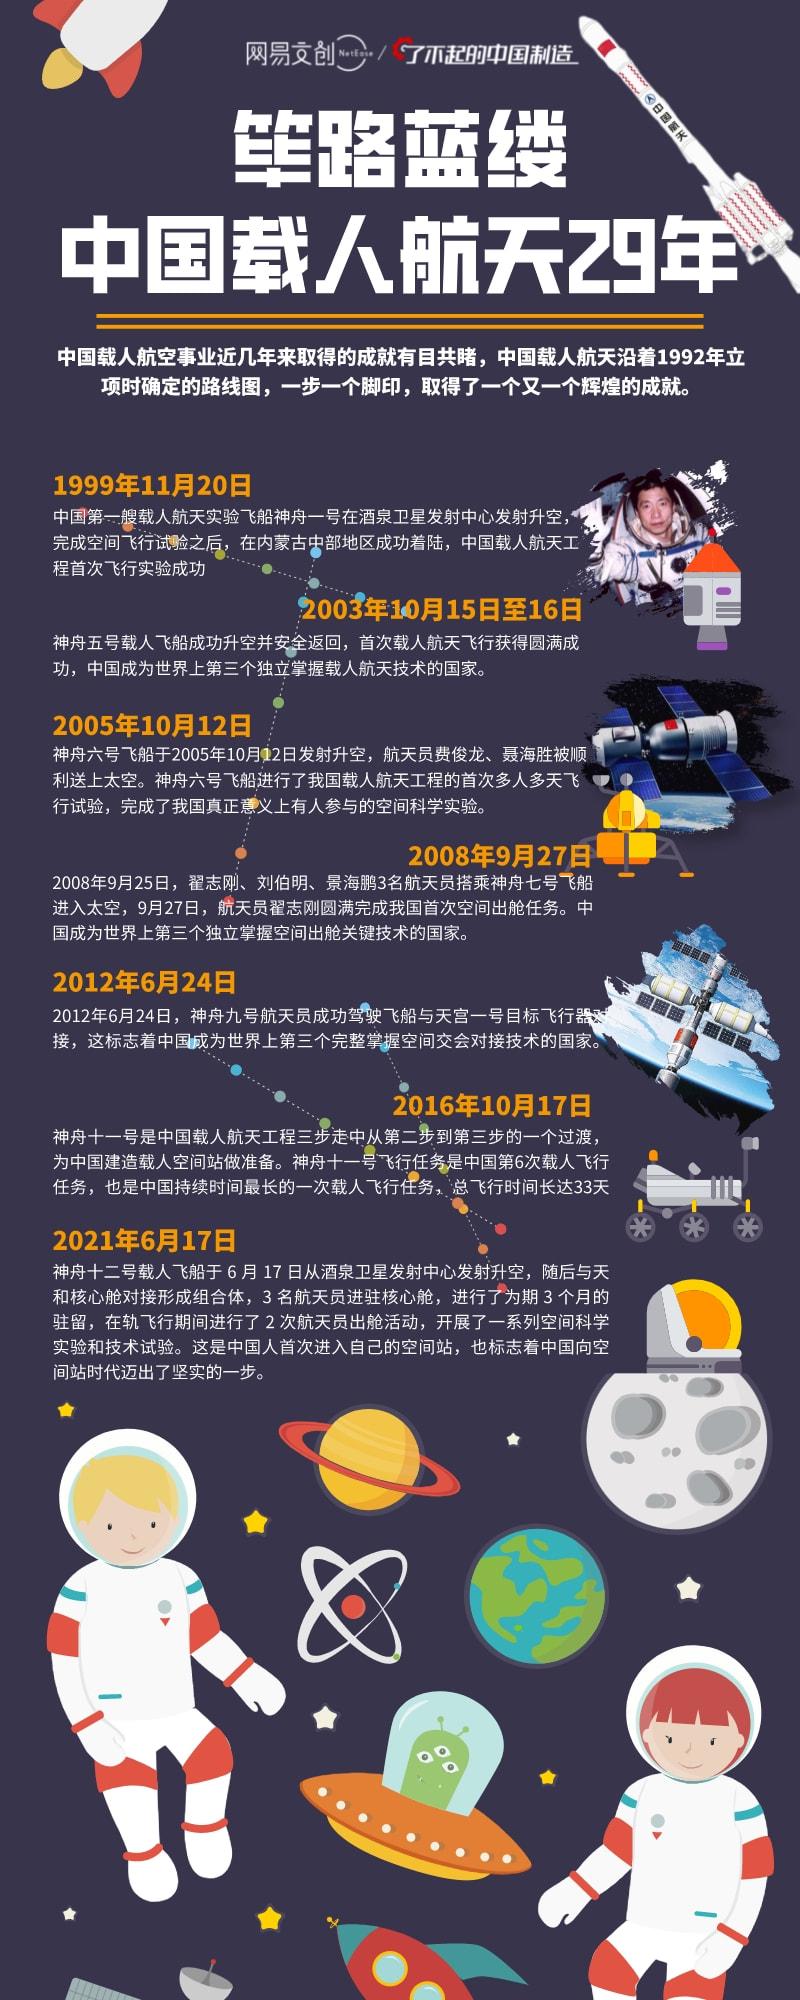 中国航天事业发展重要图片